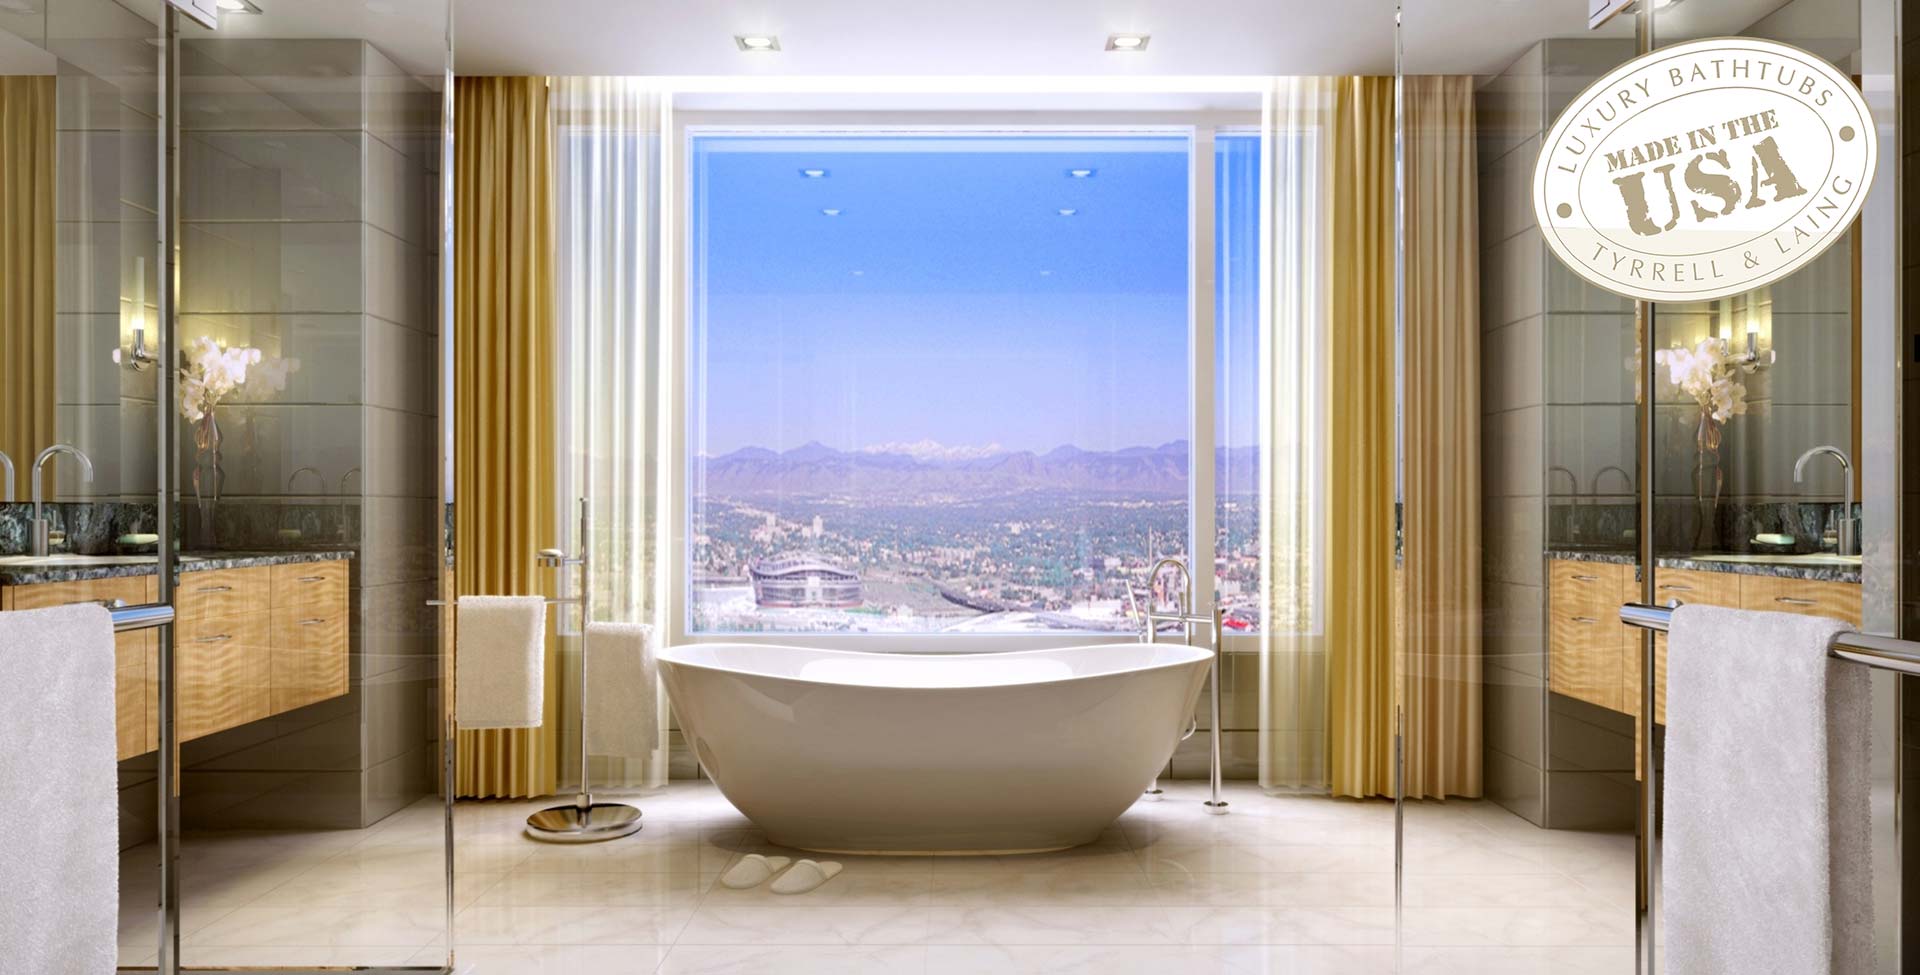 Four Seasons Hotel, Denver bathtub project